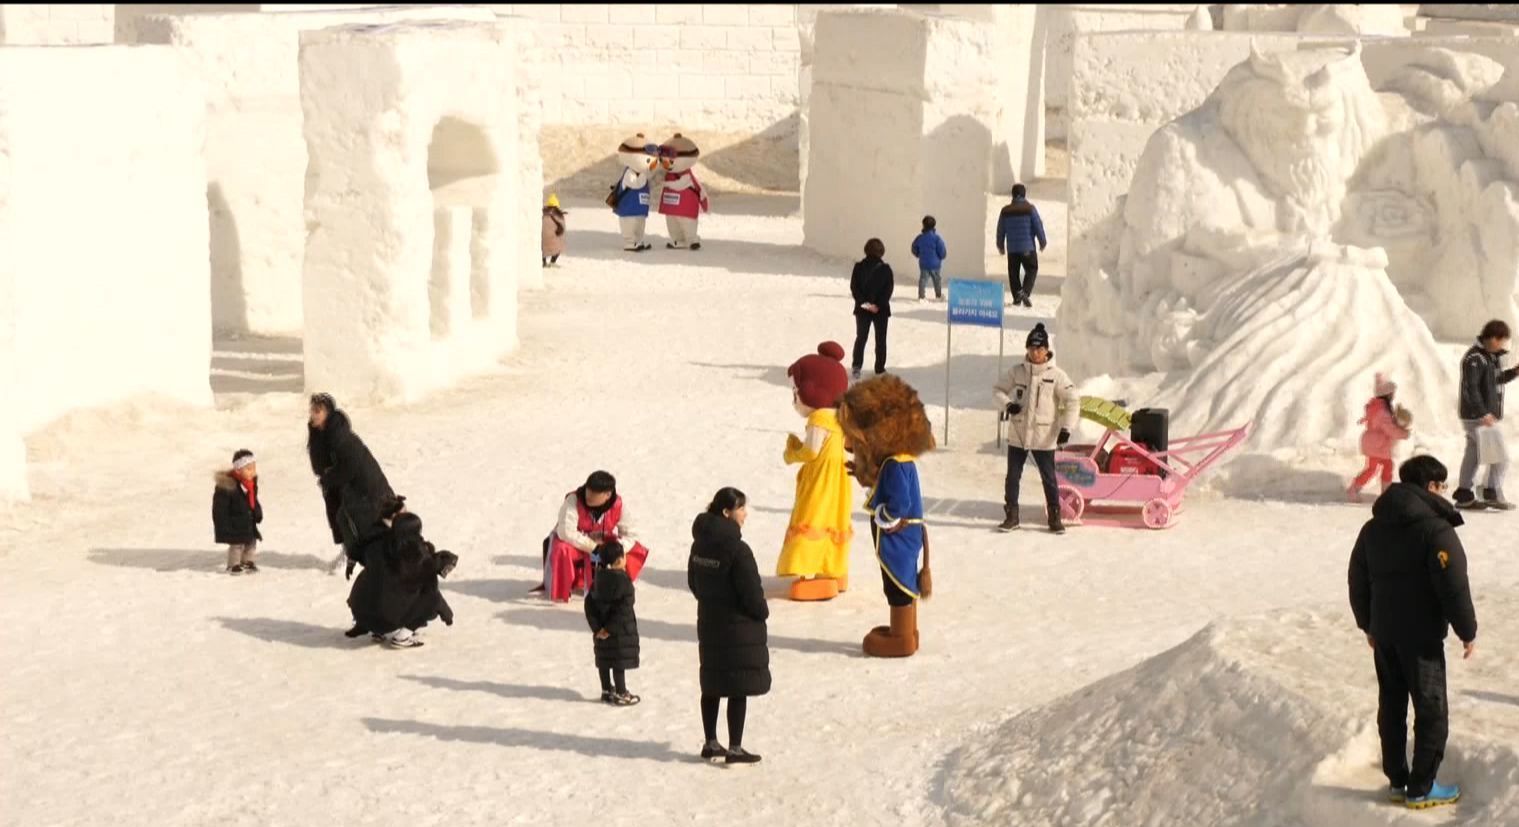 Около пяти тысяч туристов ежедневно посещают ледовый городок в Пхенчхане